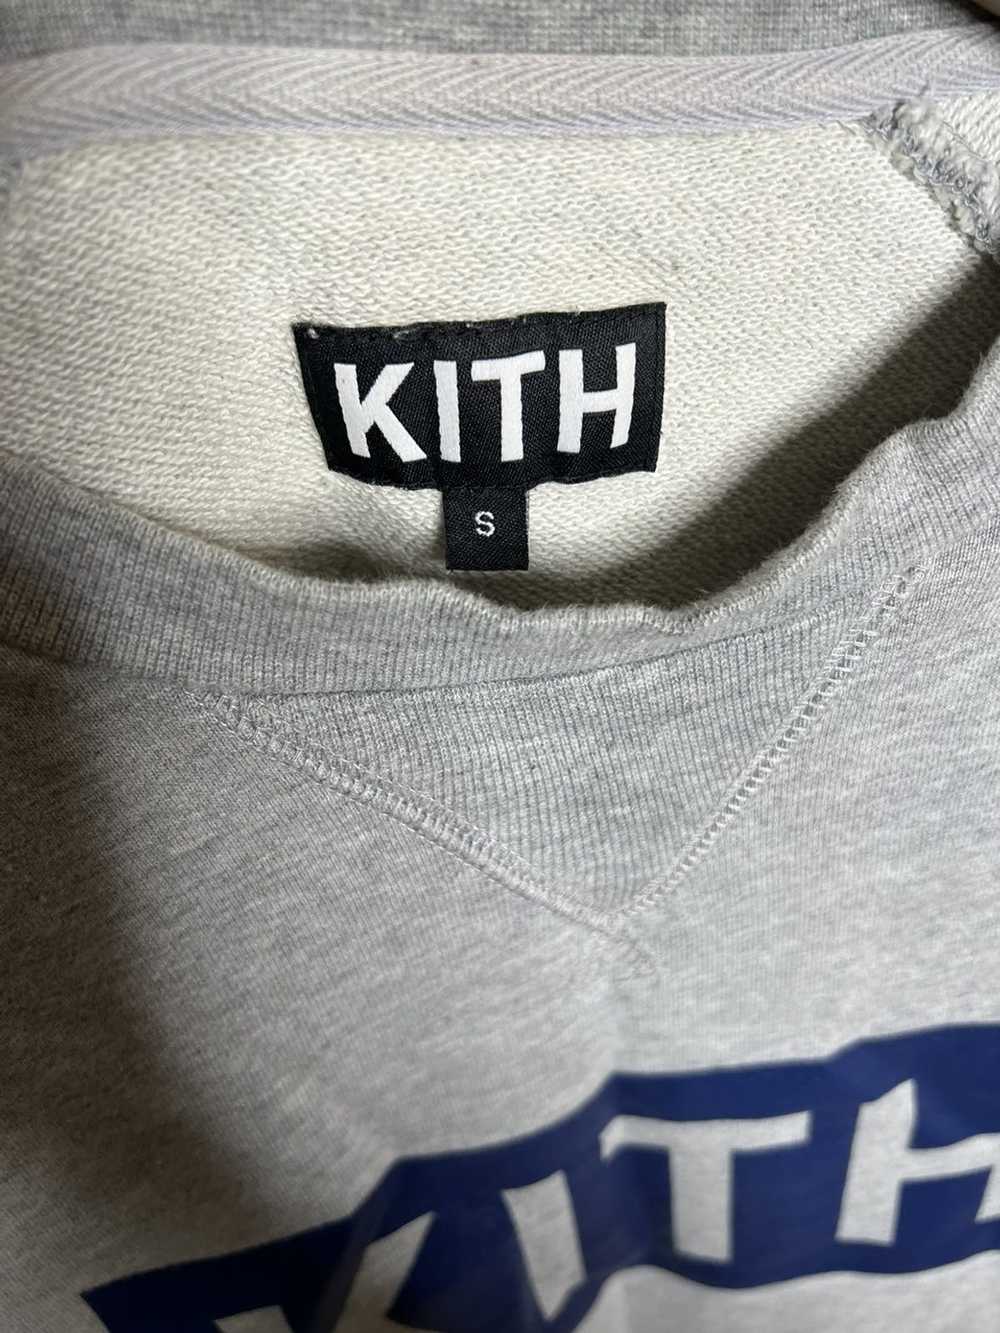 Kith Kith grey sweatshirt in Sz Small - image 3